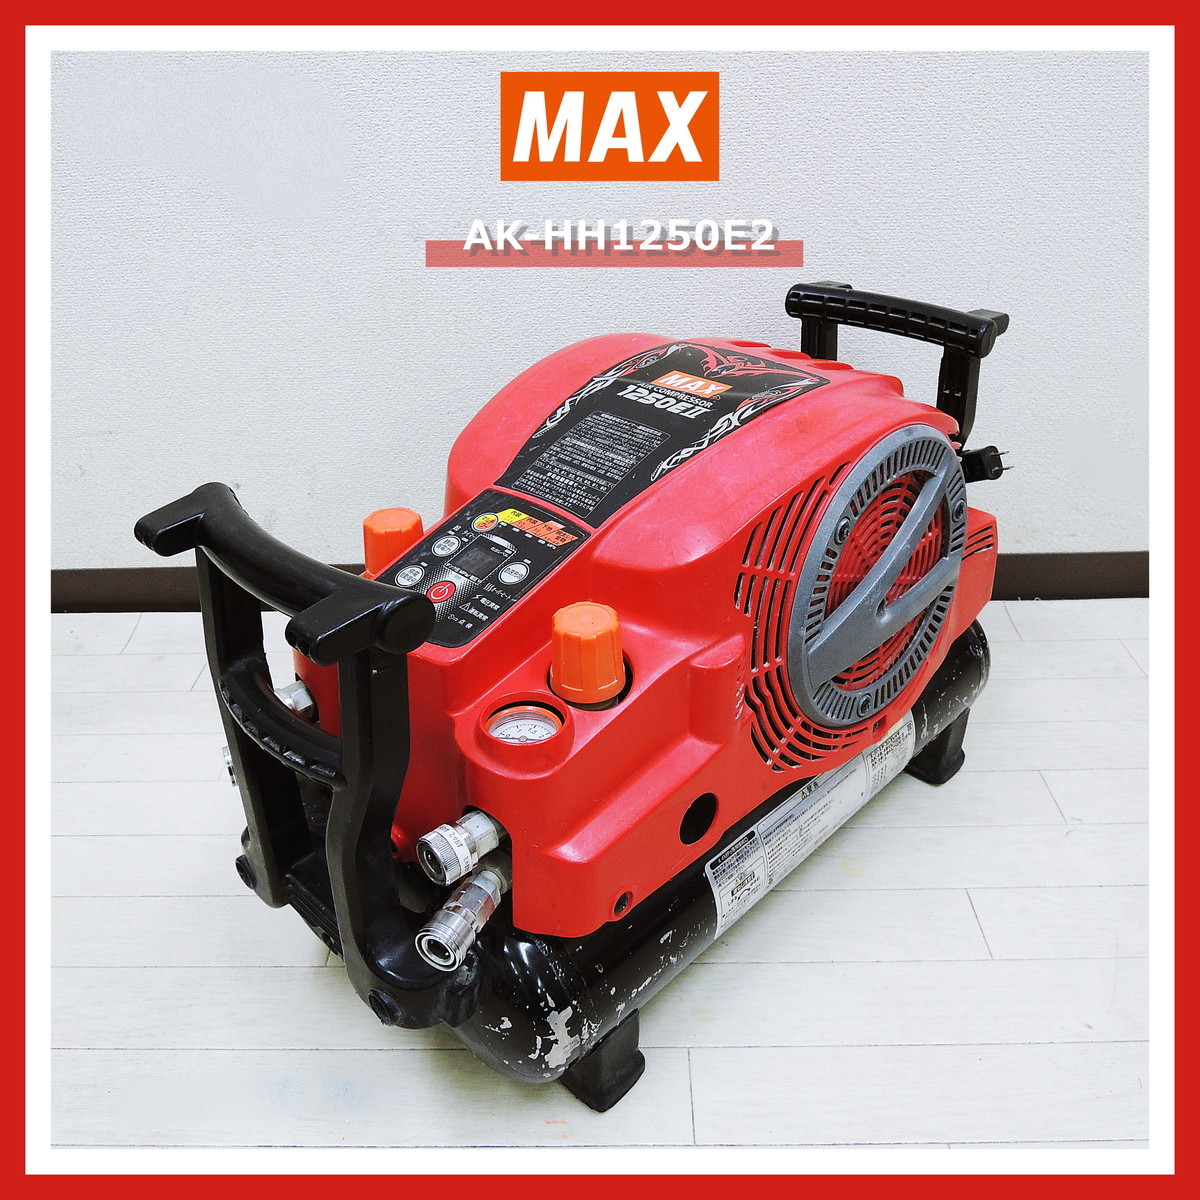 【即決!早い者勝ち!】 MAX AK-HH1250E2 スーパー エアコンプレッサ 高圧 AK-HH1250EII マックス エアー コンプレッサー